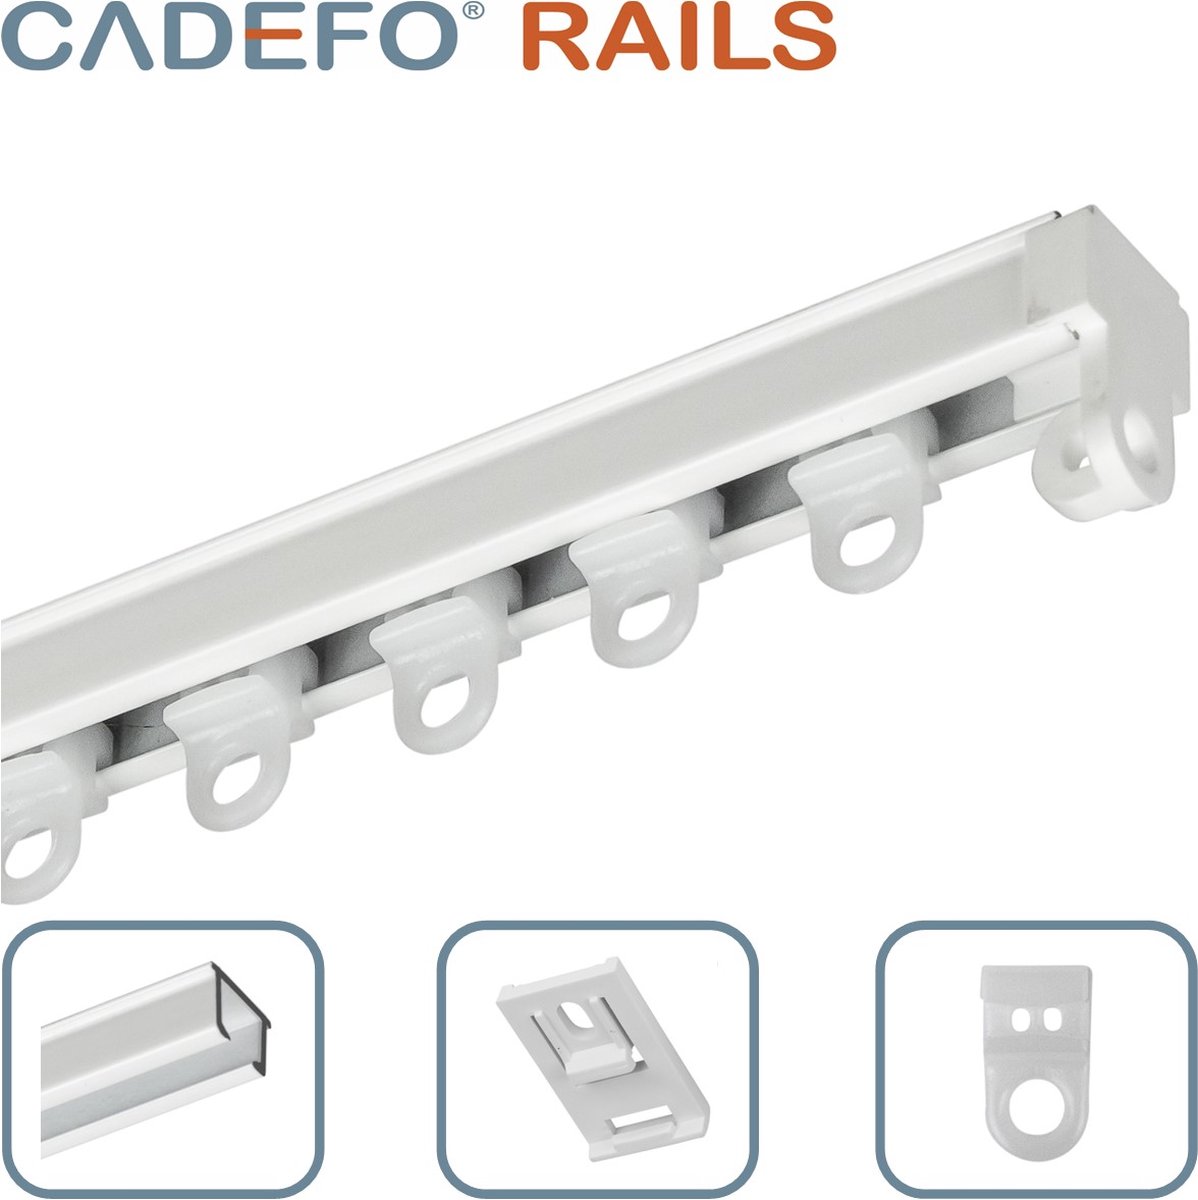 CADEFO RAILS (201 - 250 cm) Gordijnrails - Compleet op maat! - UIT 1 STUK - Leverbaar tot 6 meter - Plafondbevestiging - Lengte 209 cm